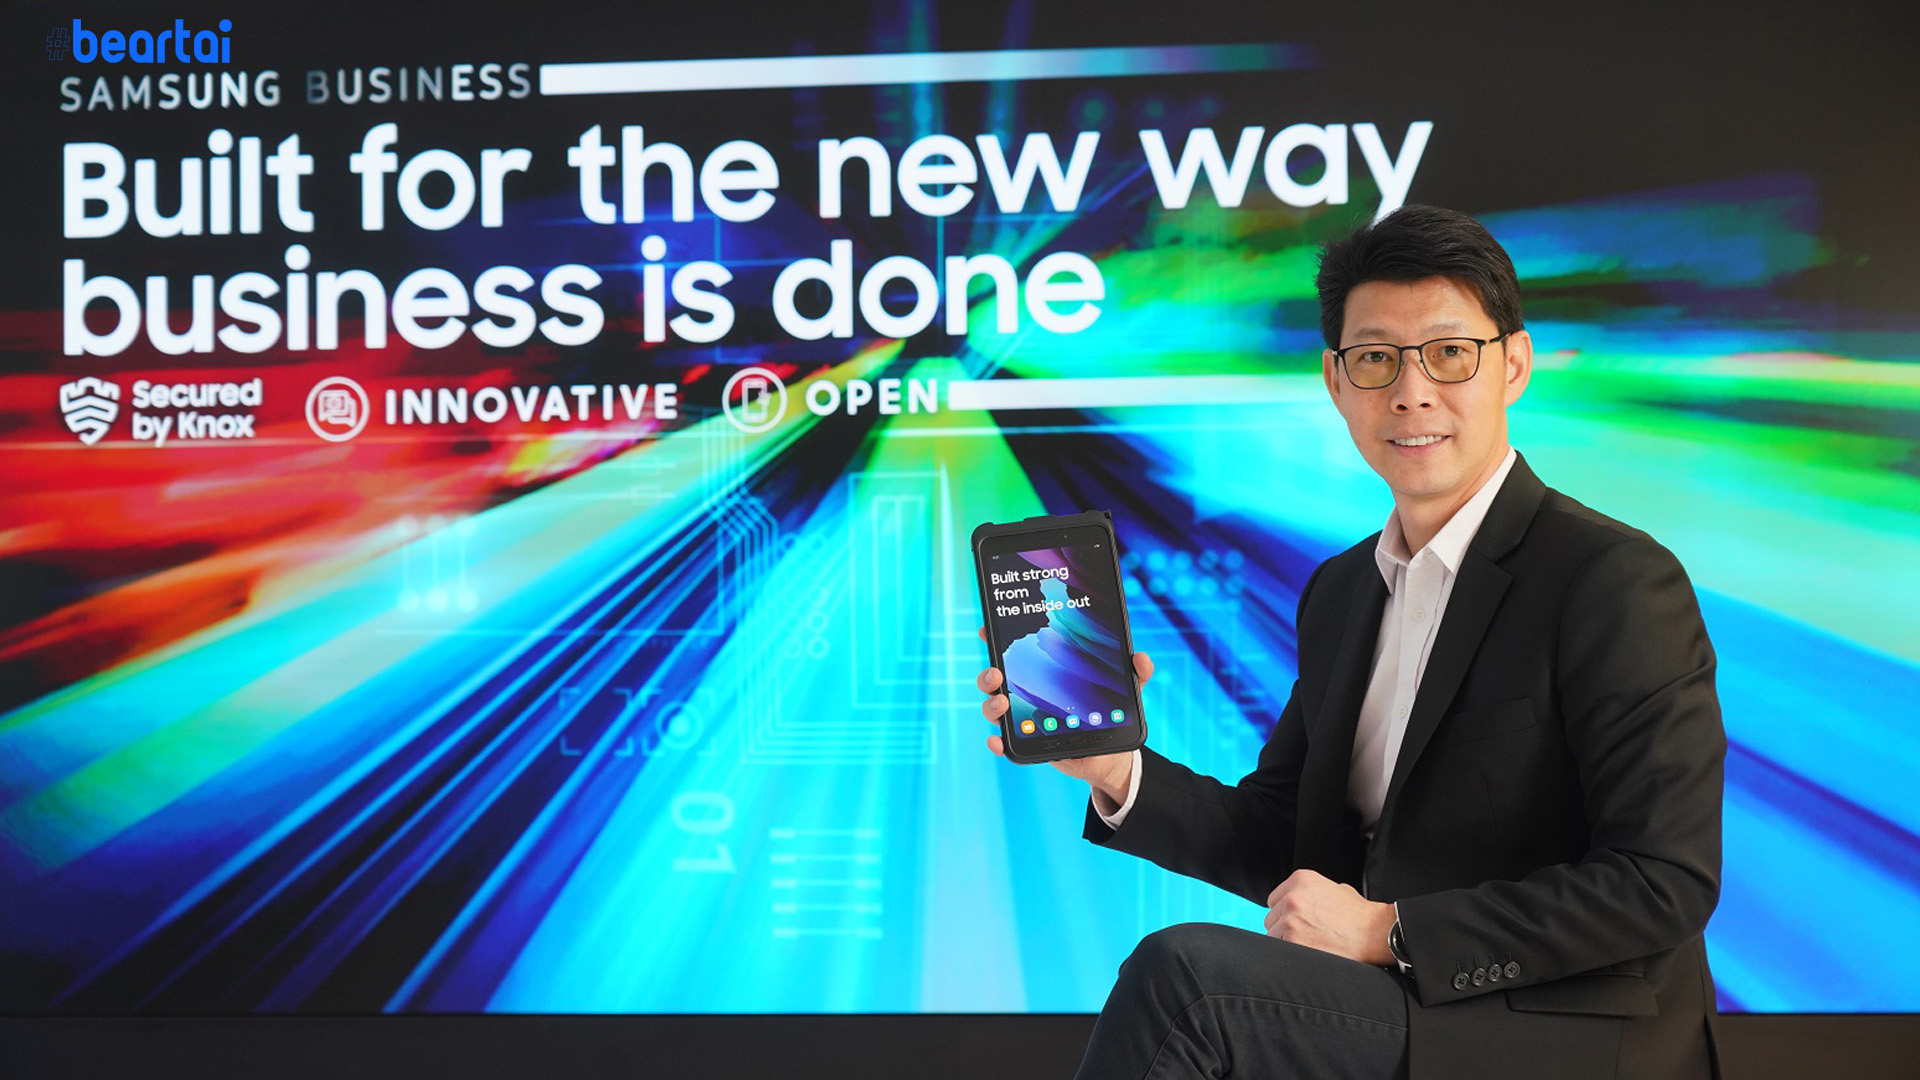 Samsung ประกาศกลยุทธ์ลูกค้าองค์กรปี 2021 รุกปั้นตลาด Rugged Device ตั้งเป้าโตเท่าตัว